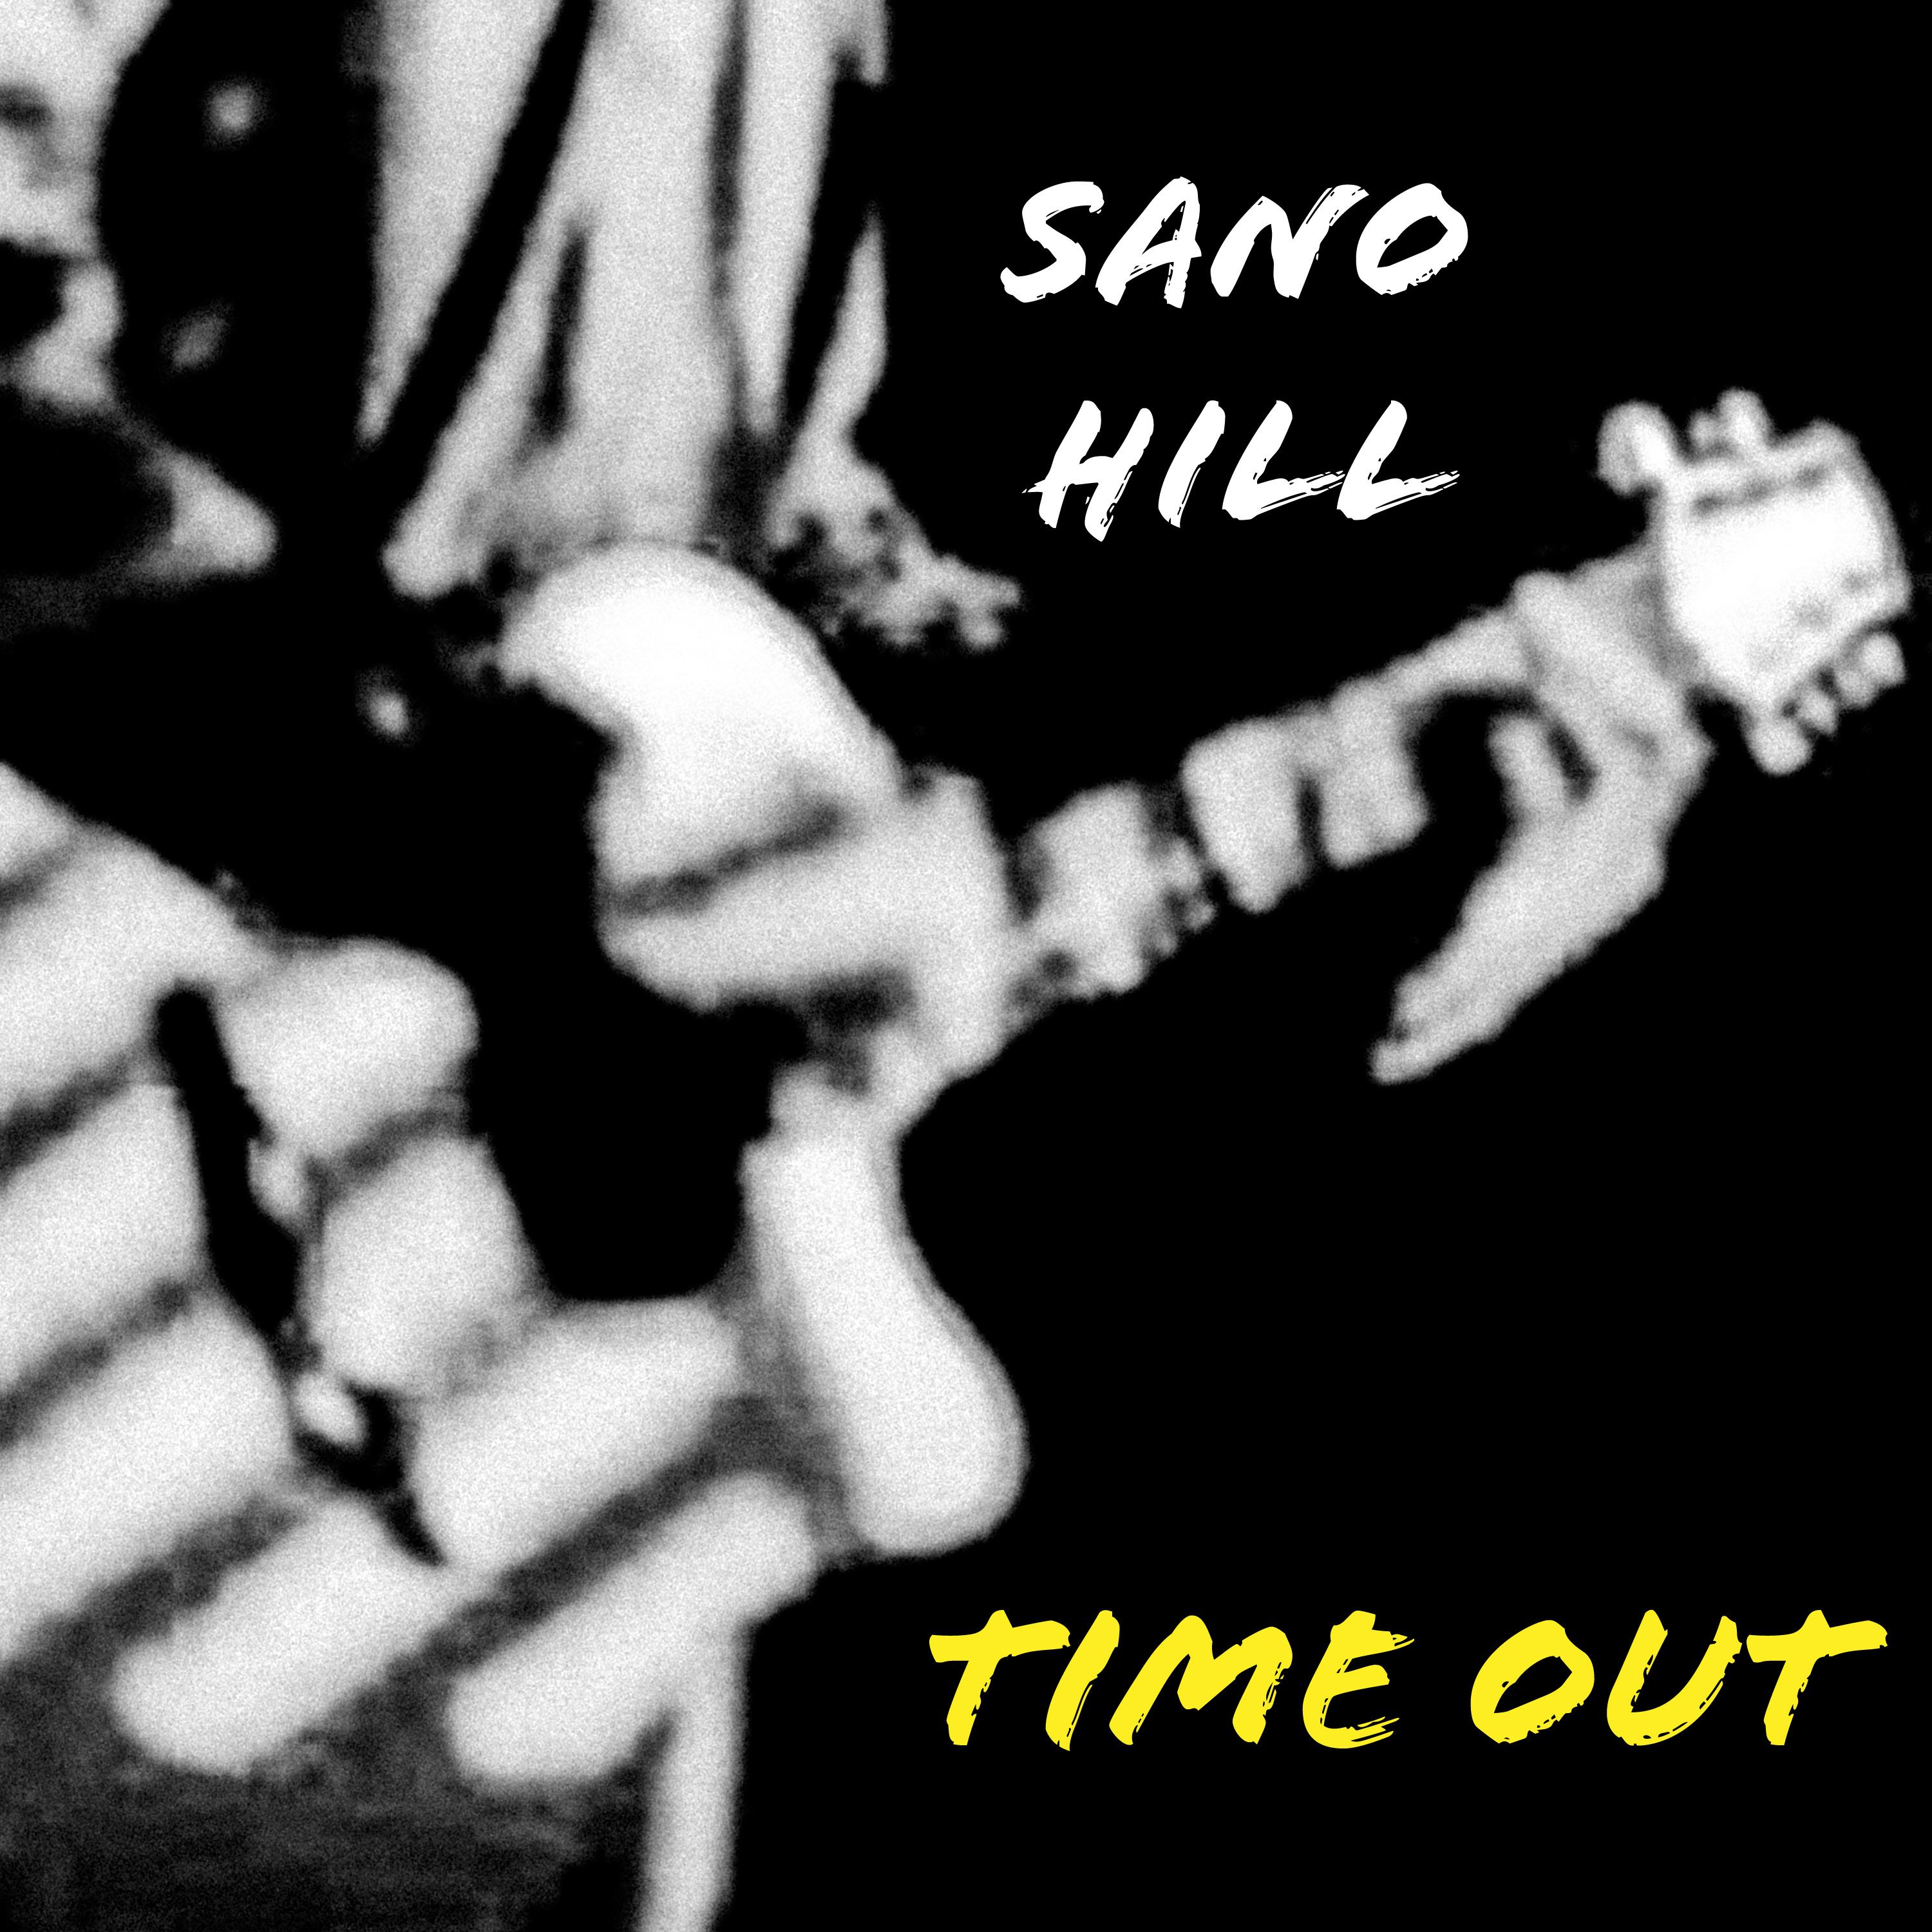 Sano Hill